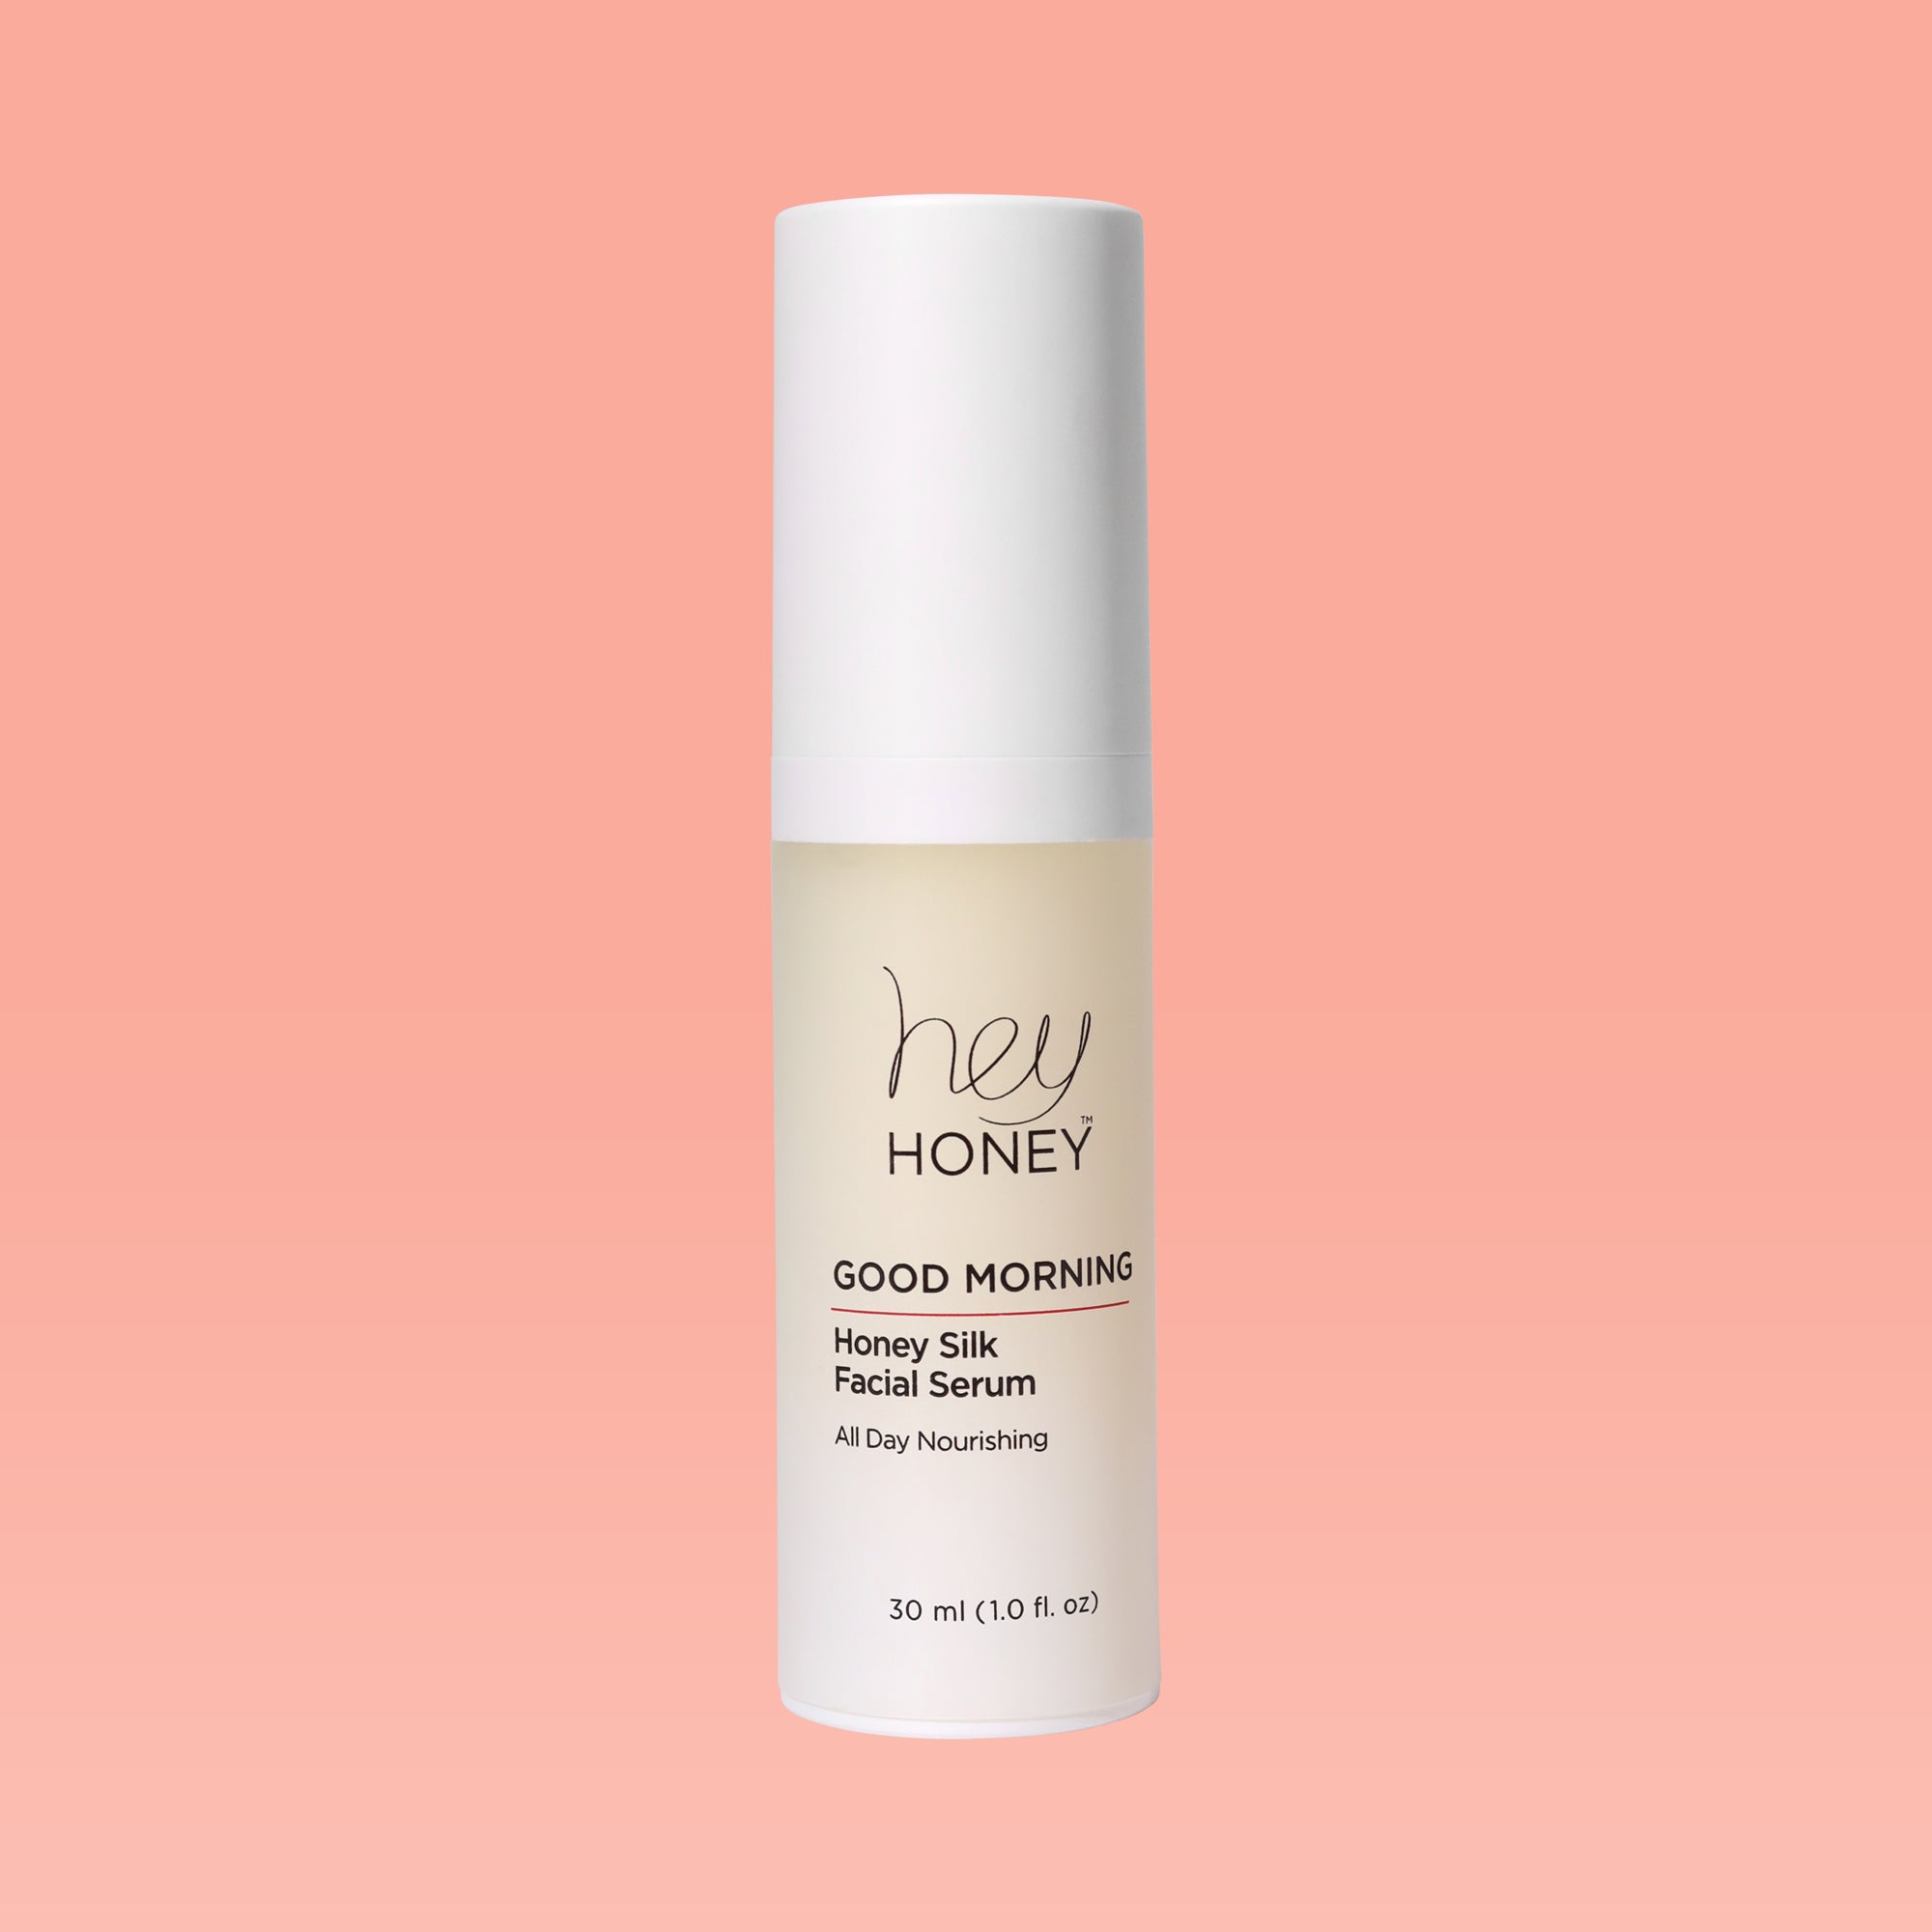 DAY AND NIGHT DUET - Hydrating Facial Honey Treatment Set - Hey Honey Beauty